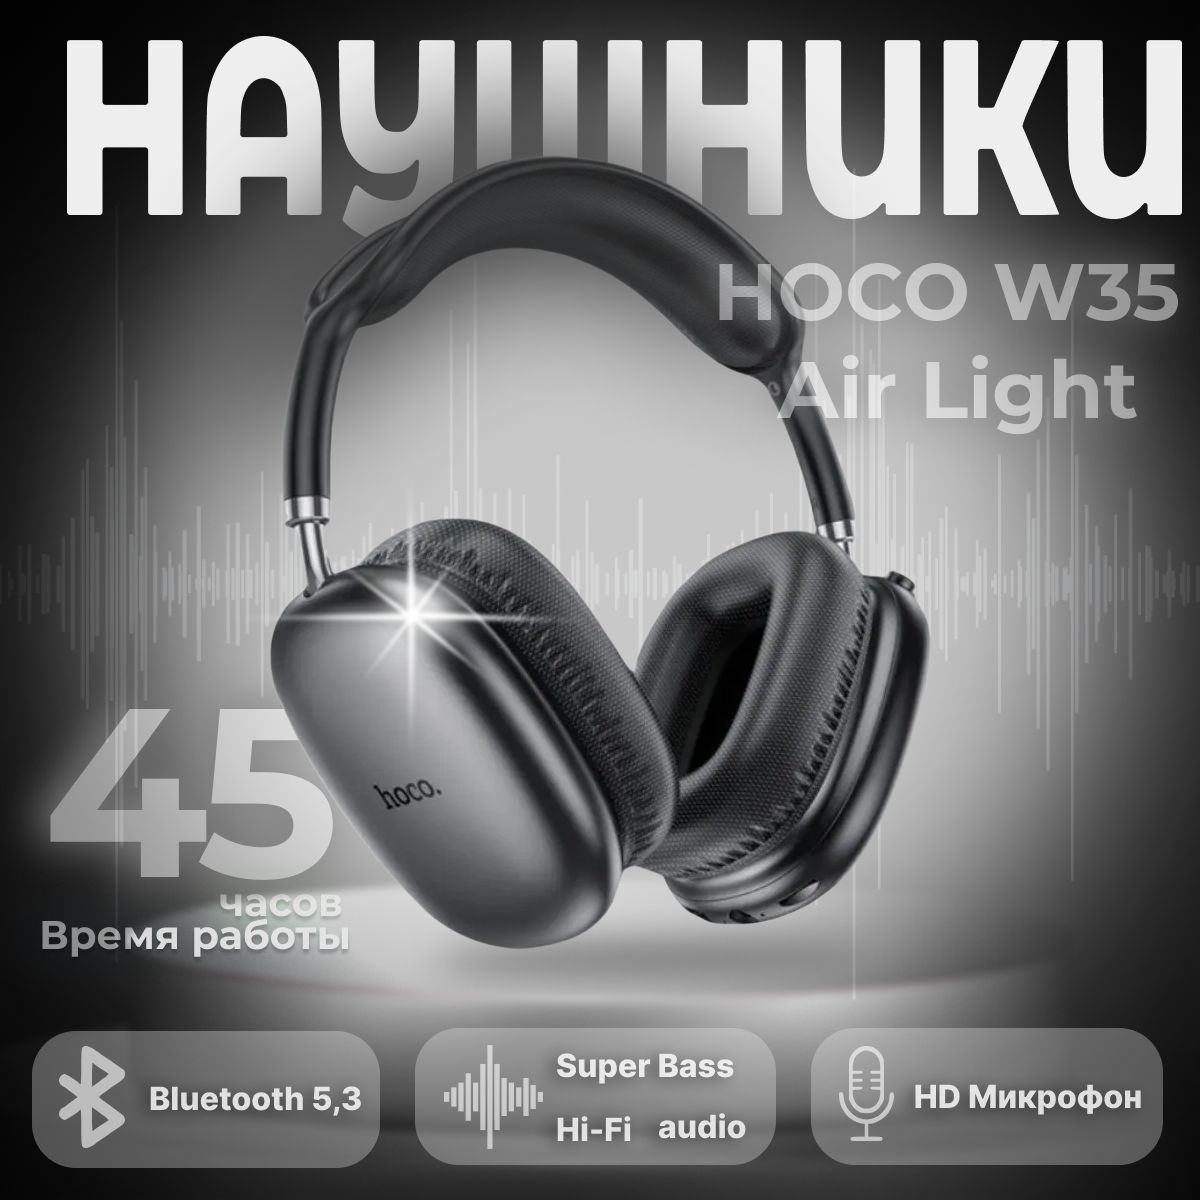 hocoНаушникисмикрофоном,Bluetooth,USBType-C,3.5мм,черный